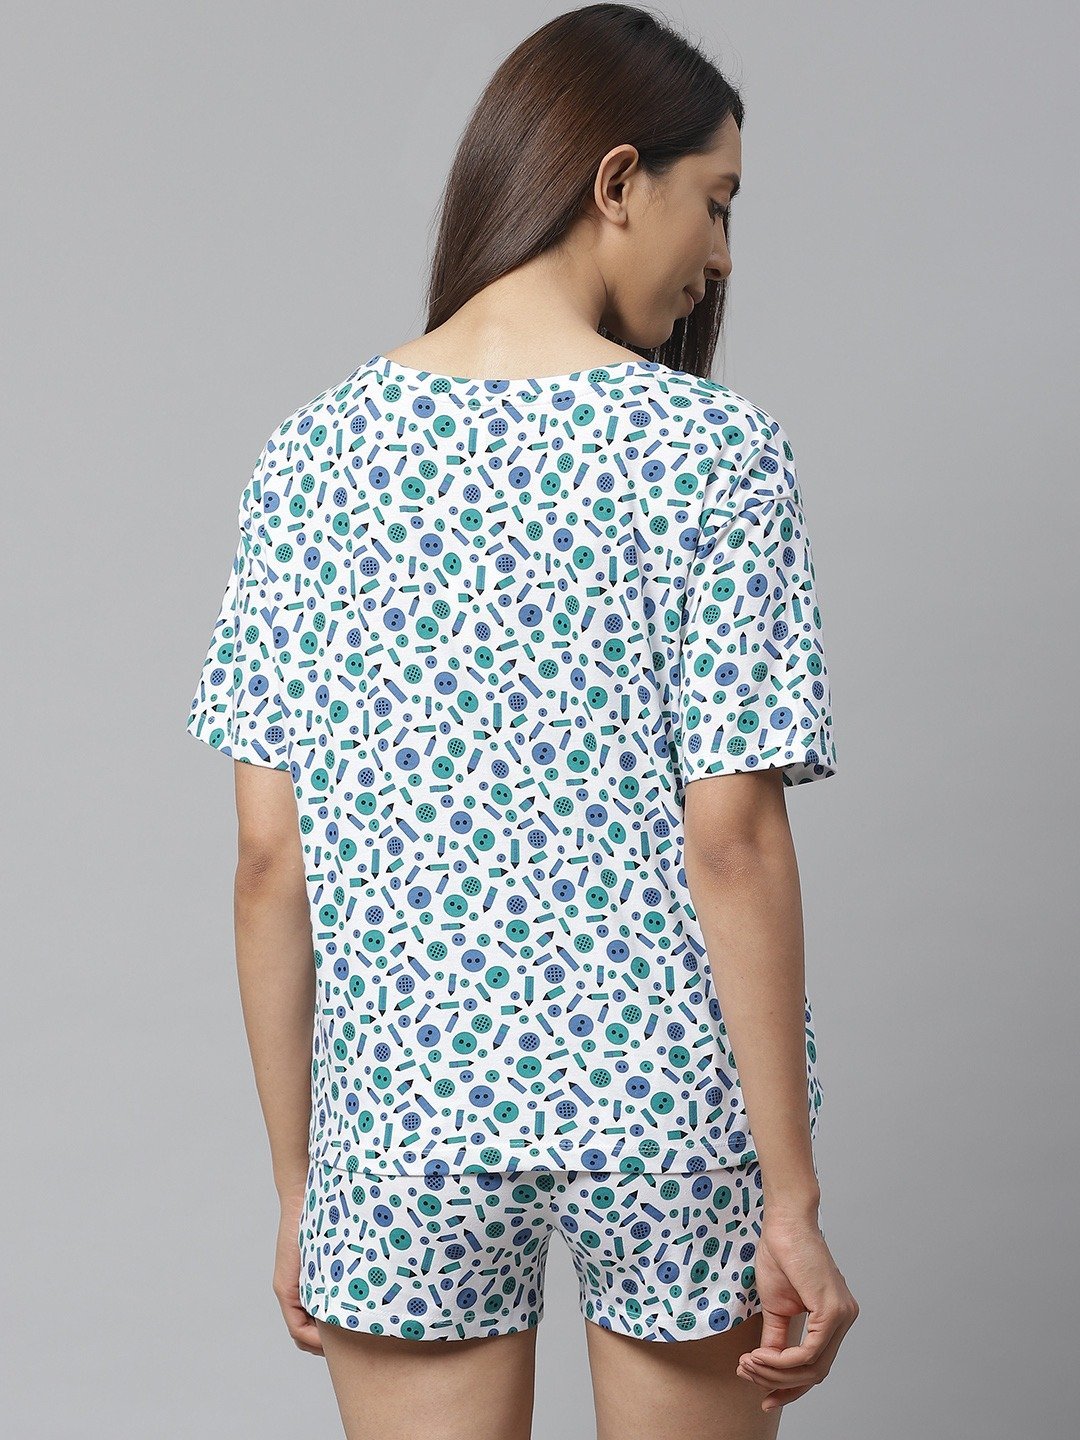 Style Dunes Night Suit Set for Women | Star Print Cotton Shirt & Short -  Wowxop